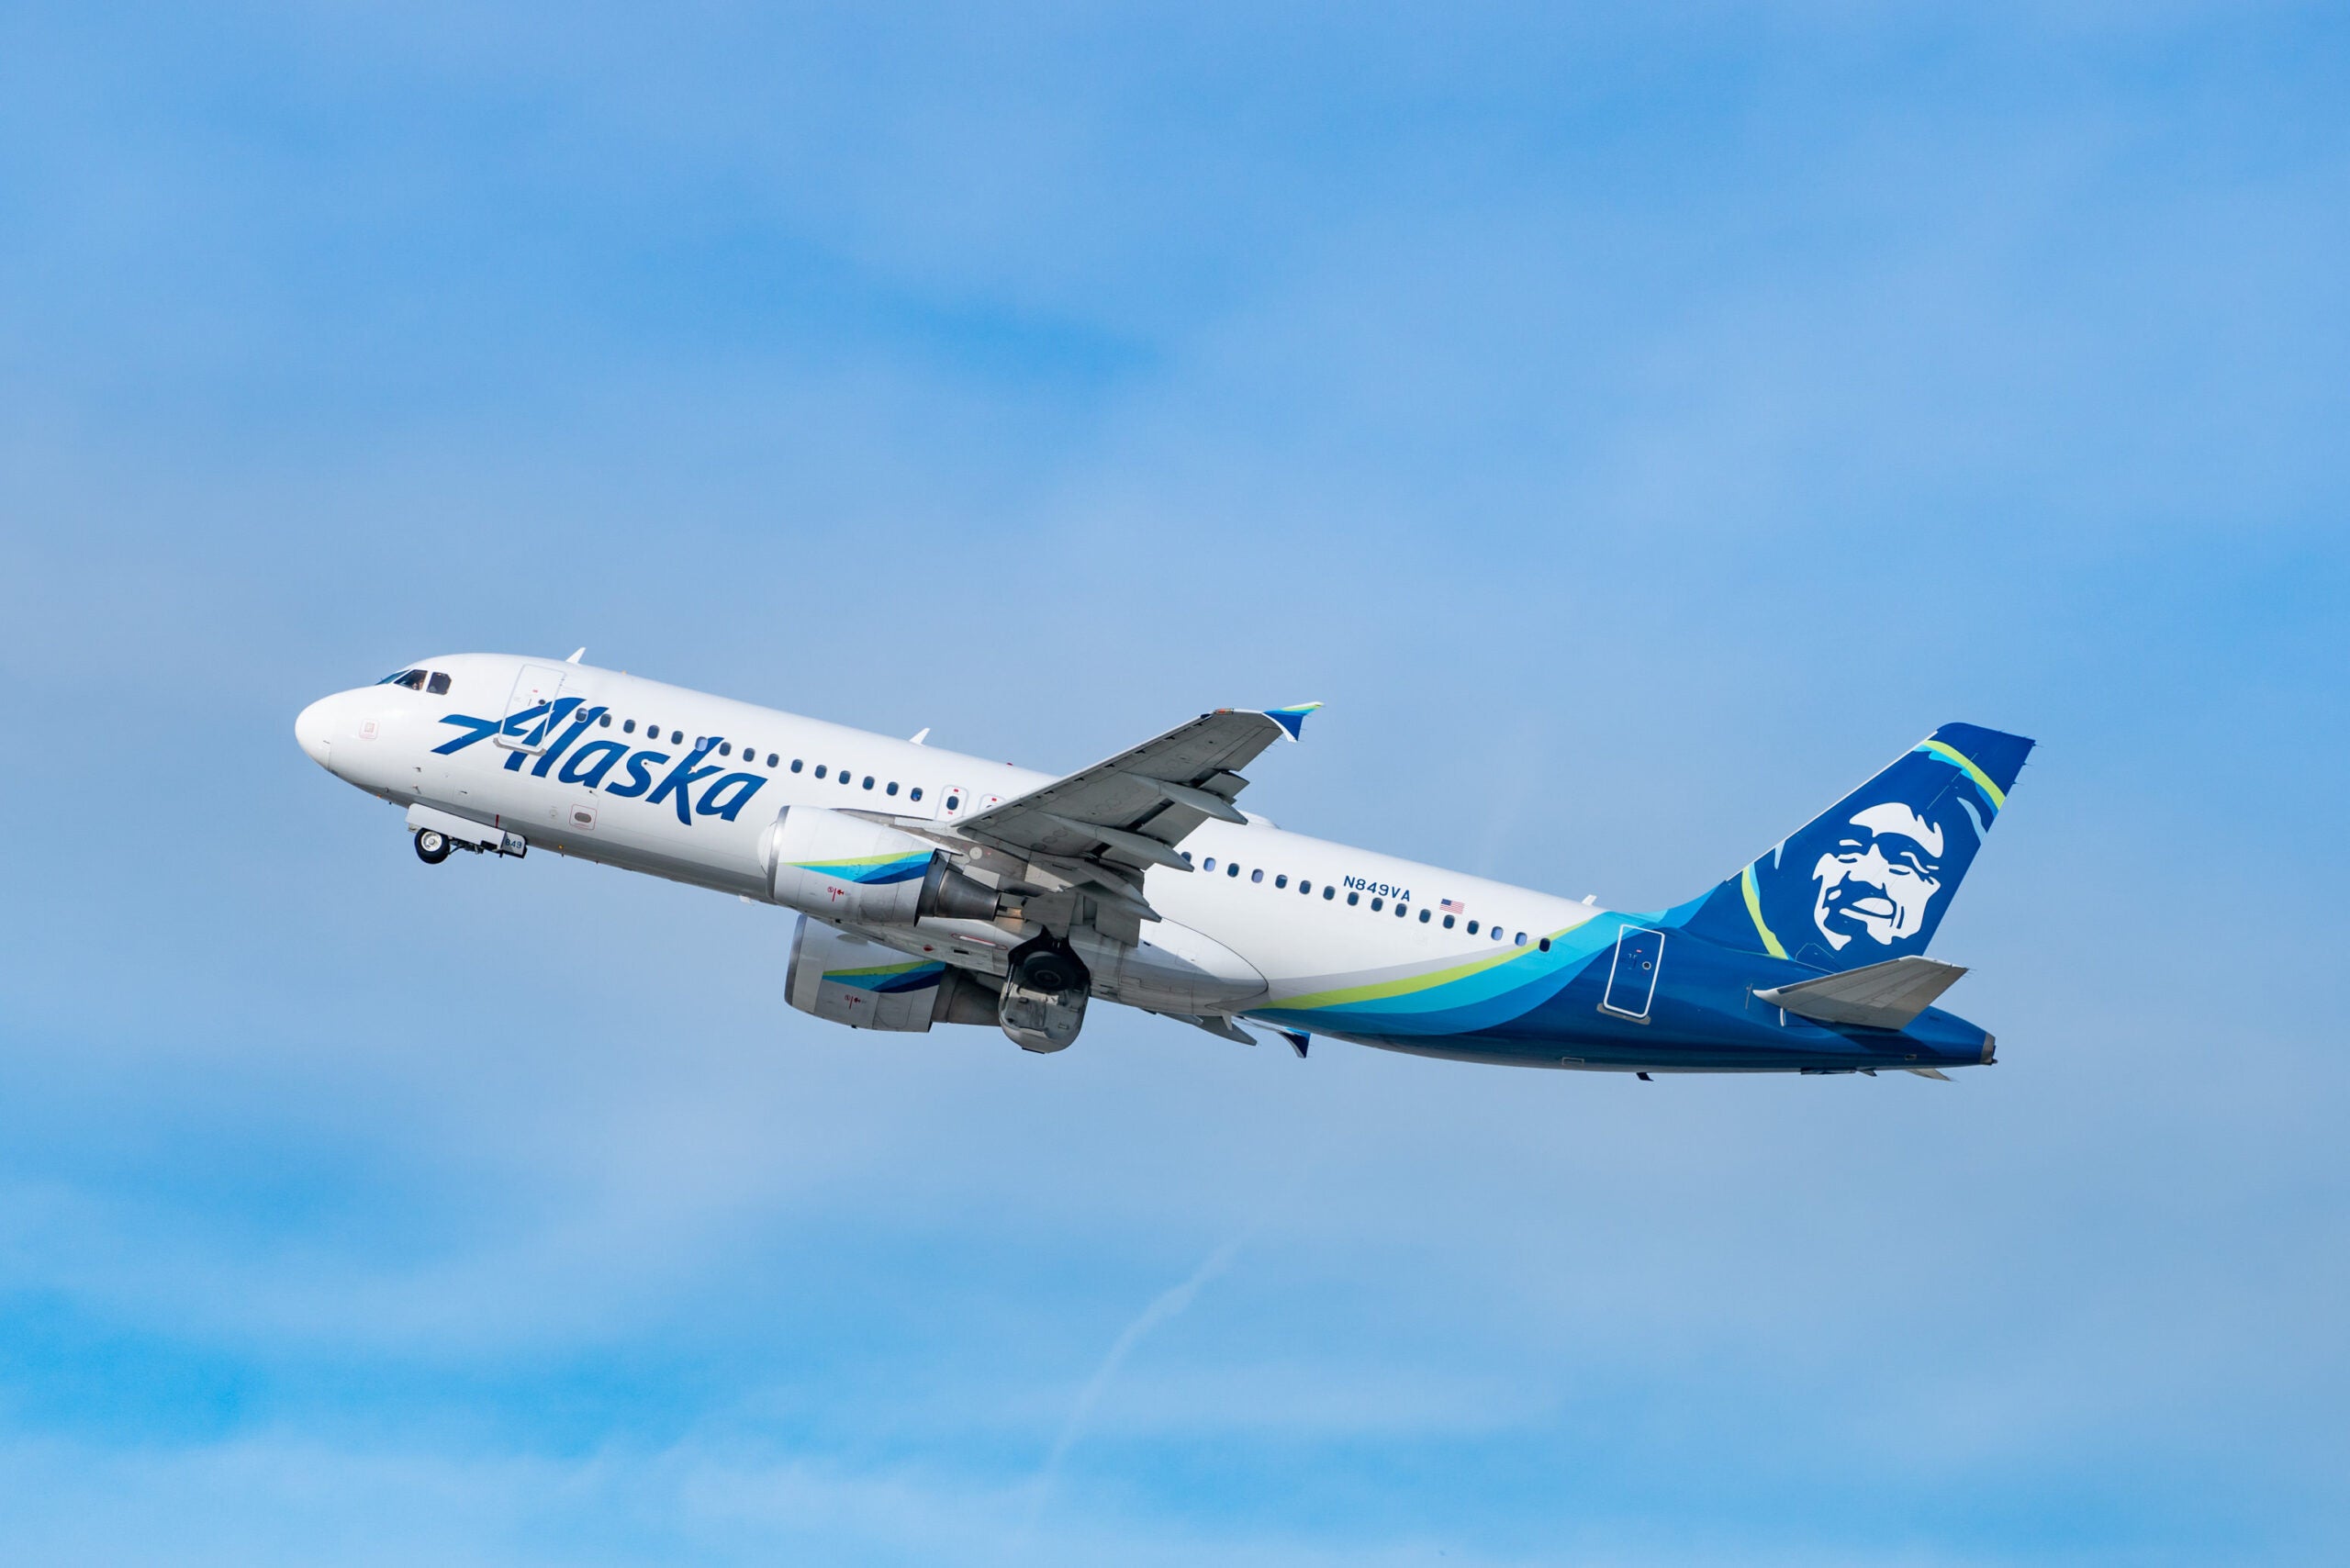 Alaska Airlines A320